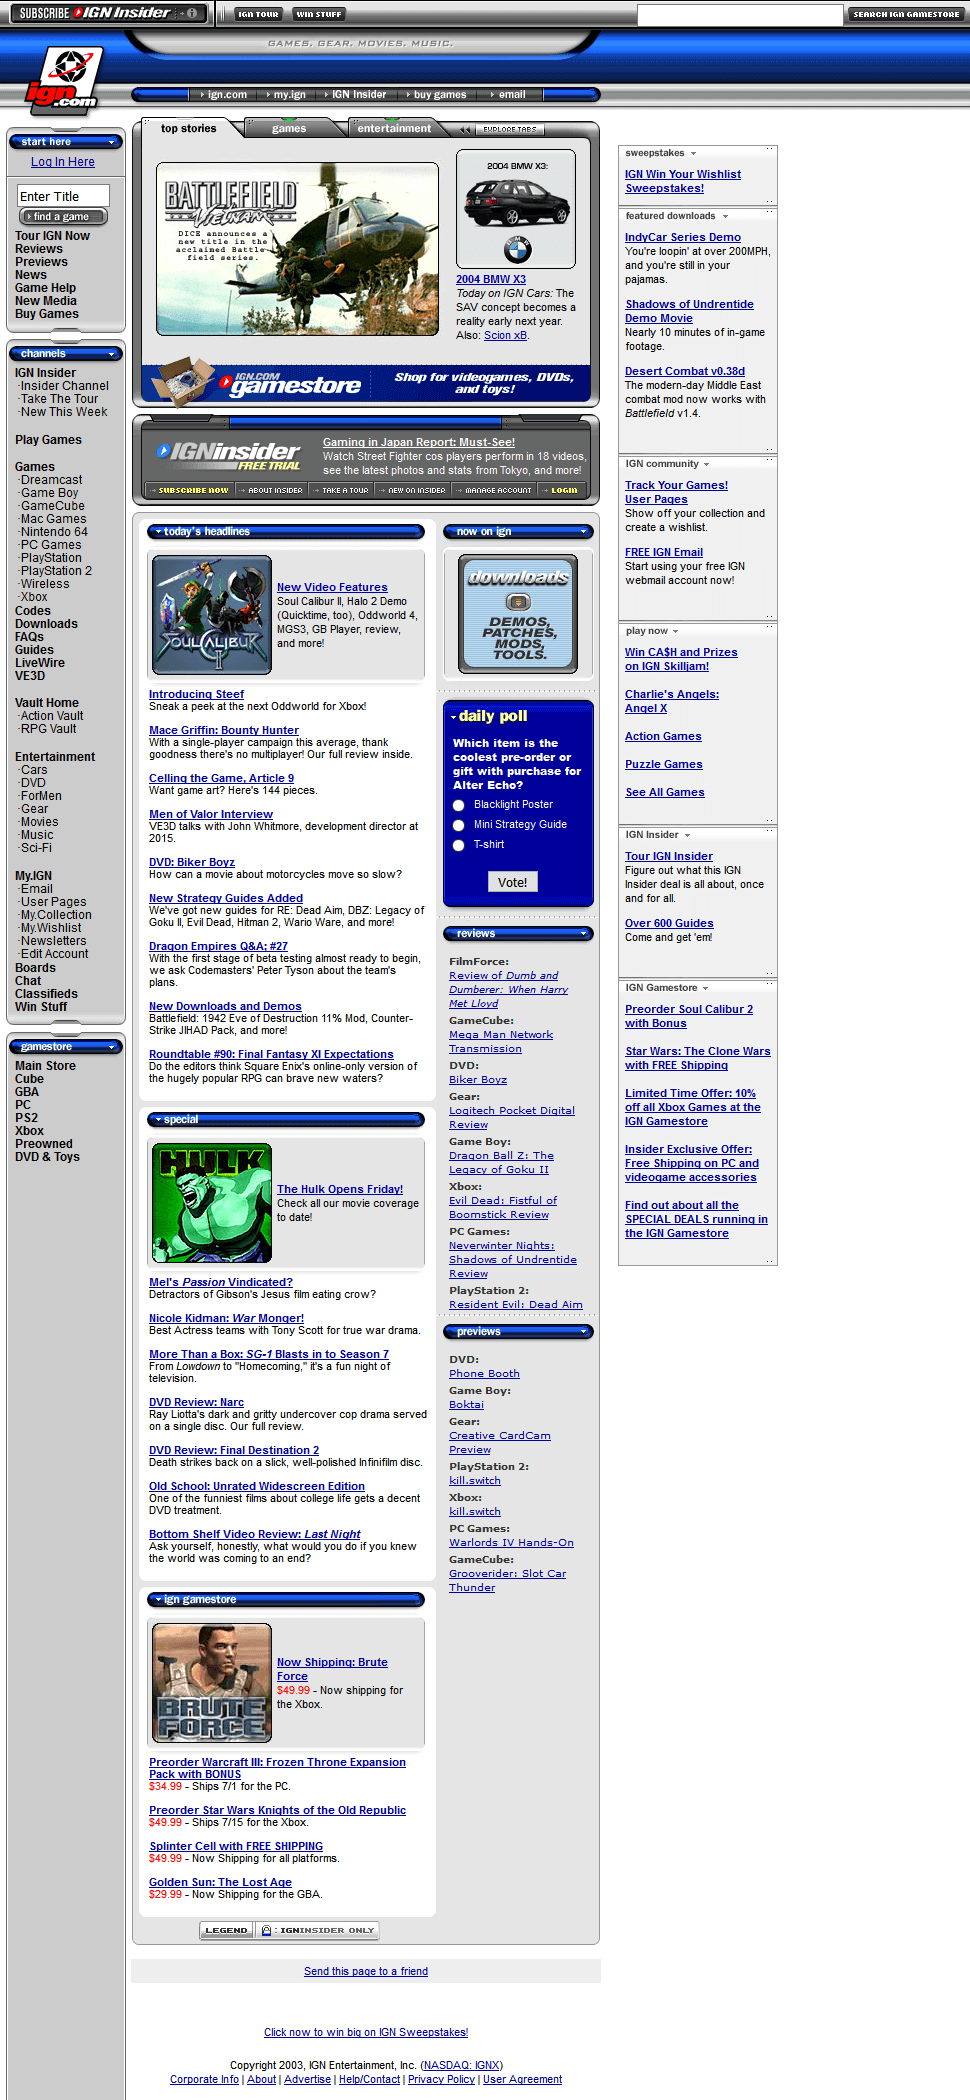 IGN website in 2003